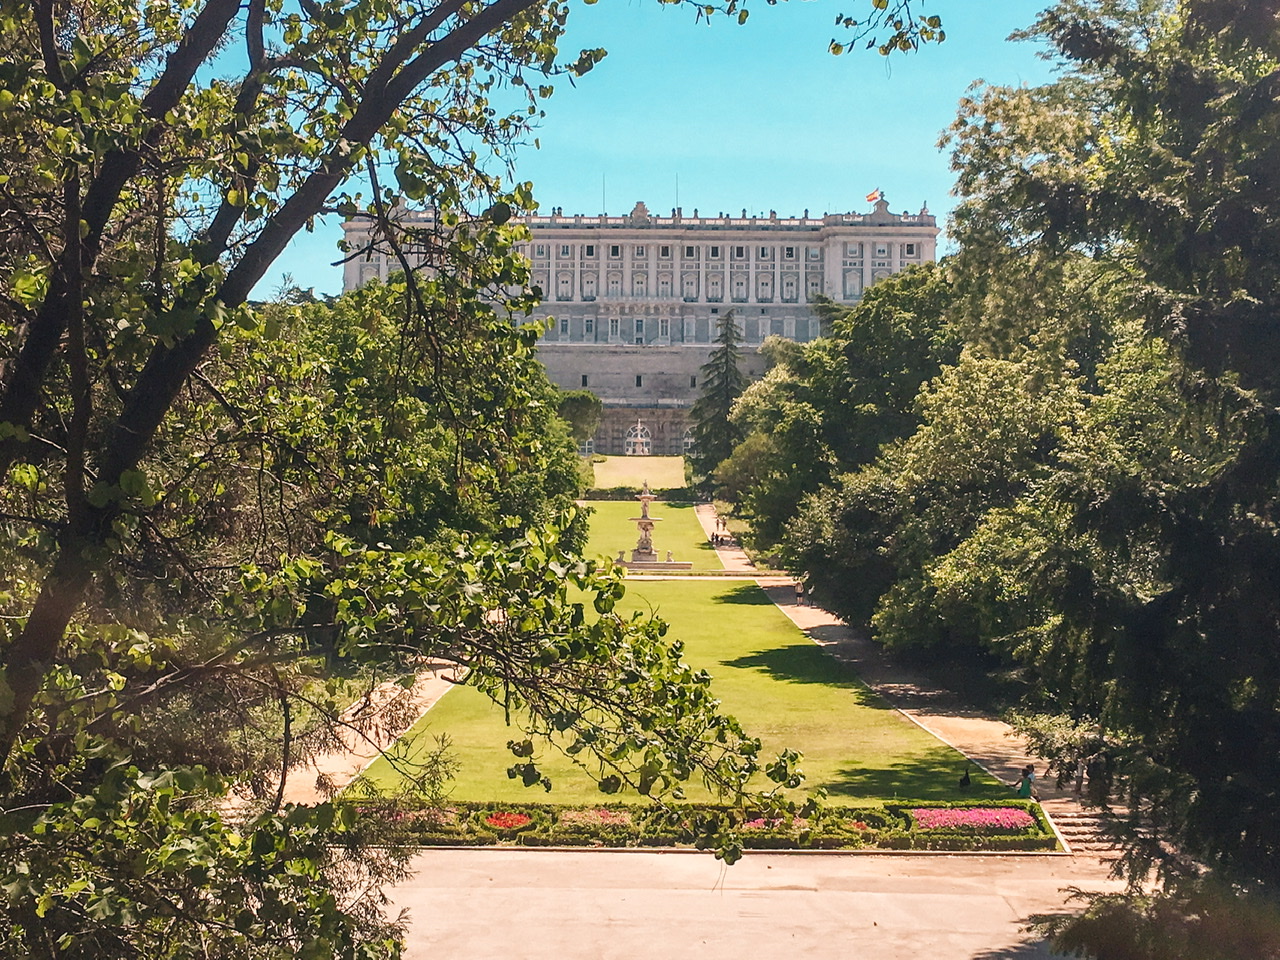 landscape of the Campo del Moro Gardens in Madrid